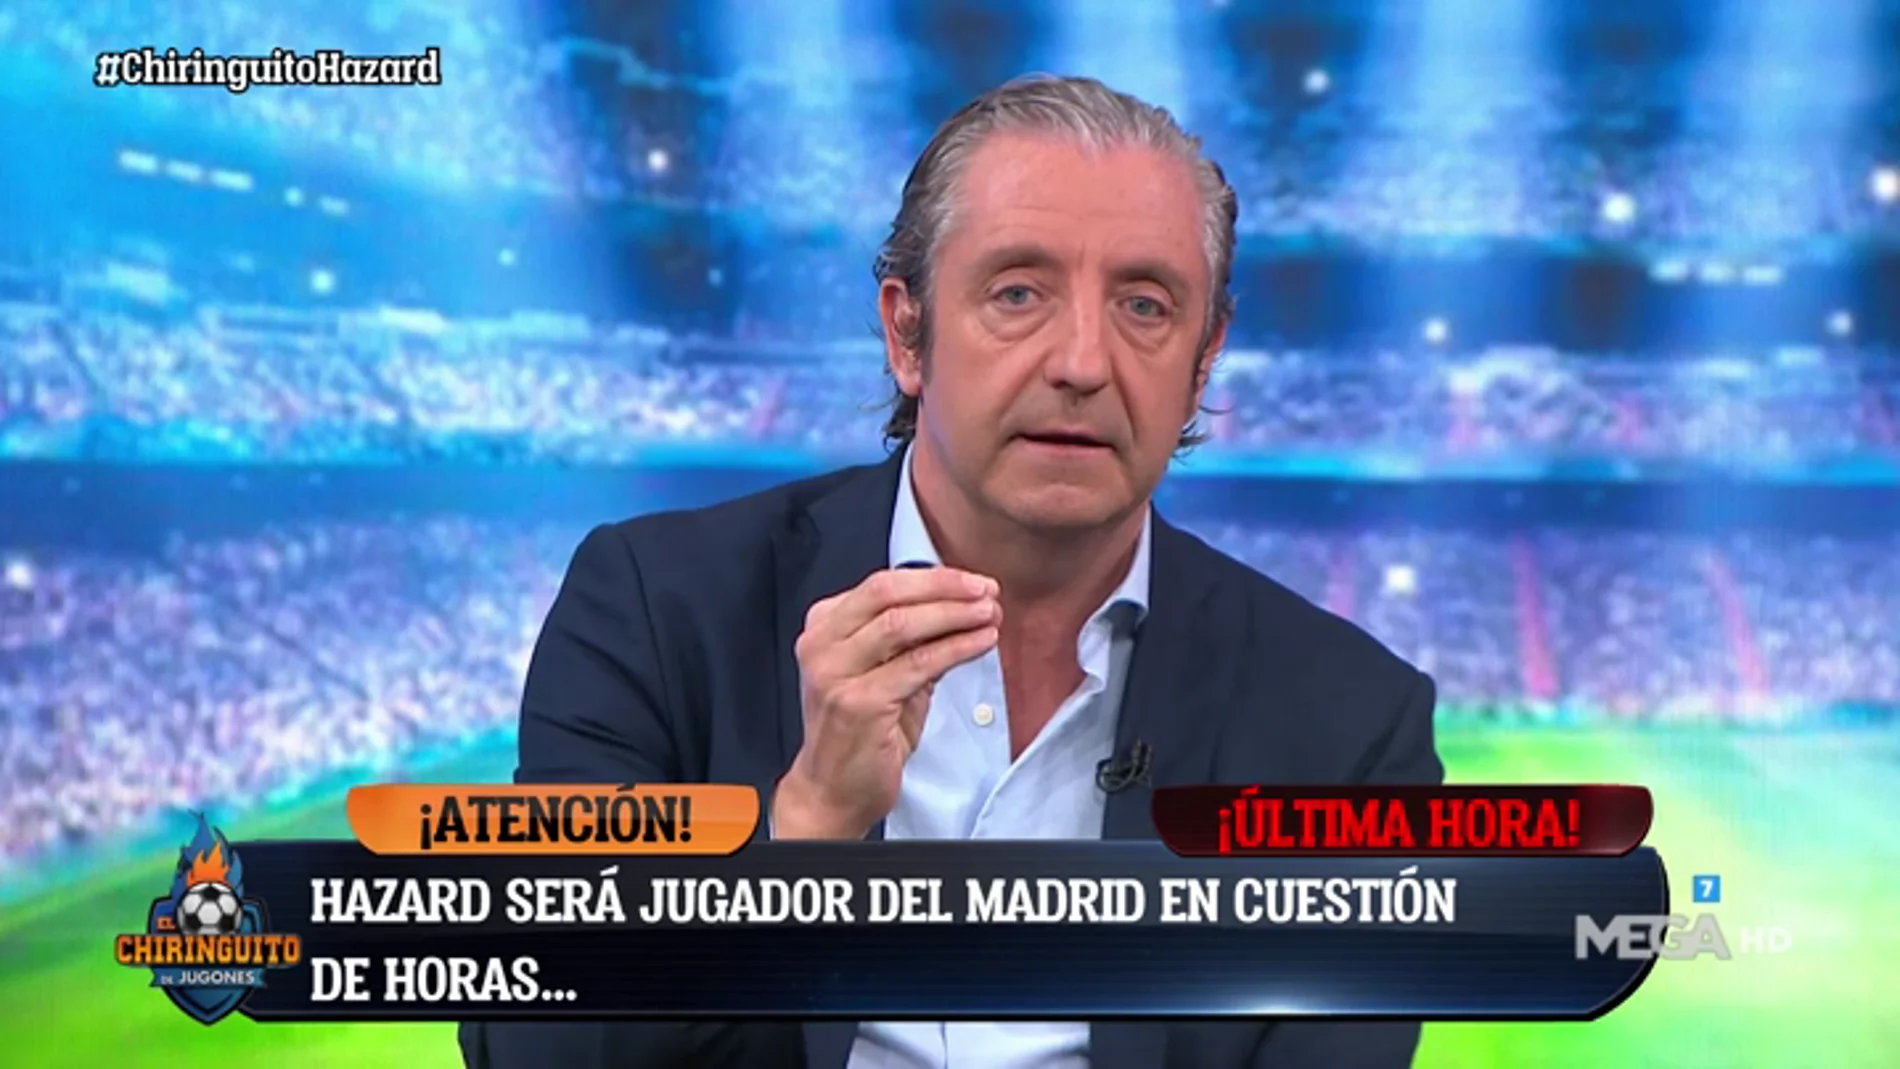 Josep Pedrerol: "Hazard será jugador del Real Madrid mañana por la mañana"